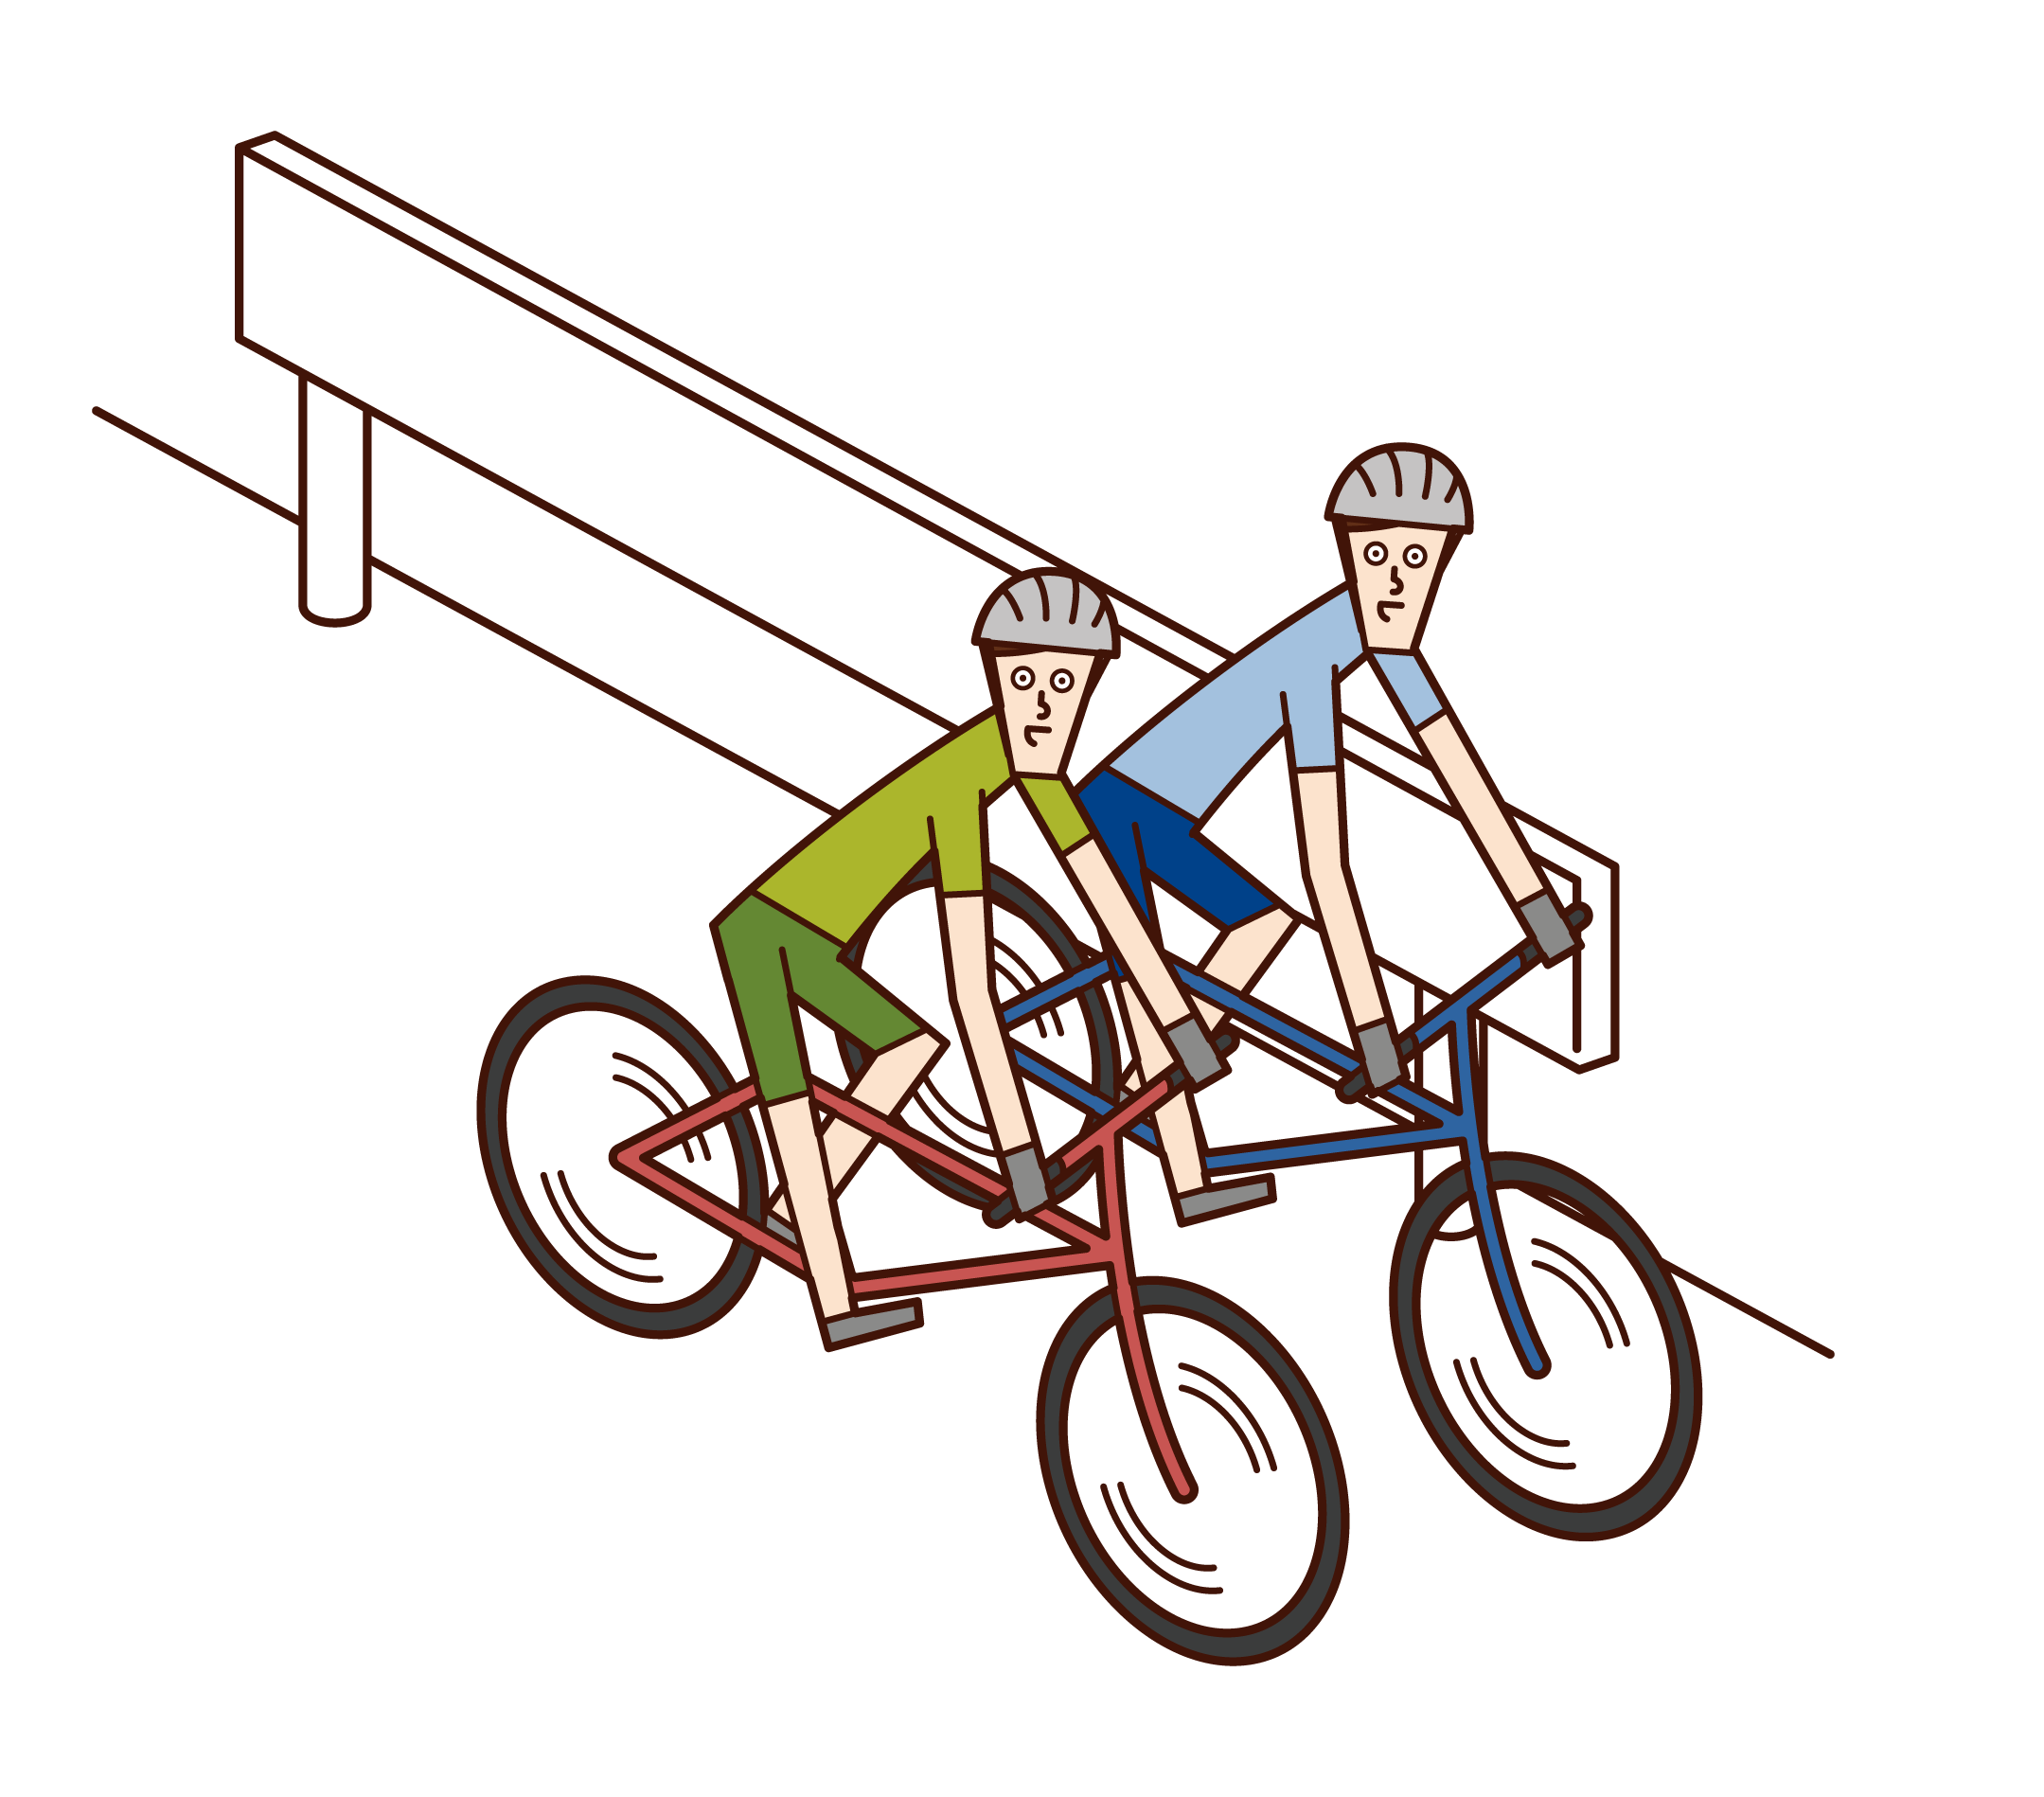 아이 시트에 아이와 함께 자전거를 타는 여성의 그림